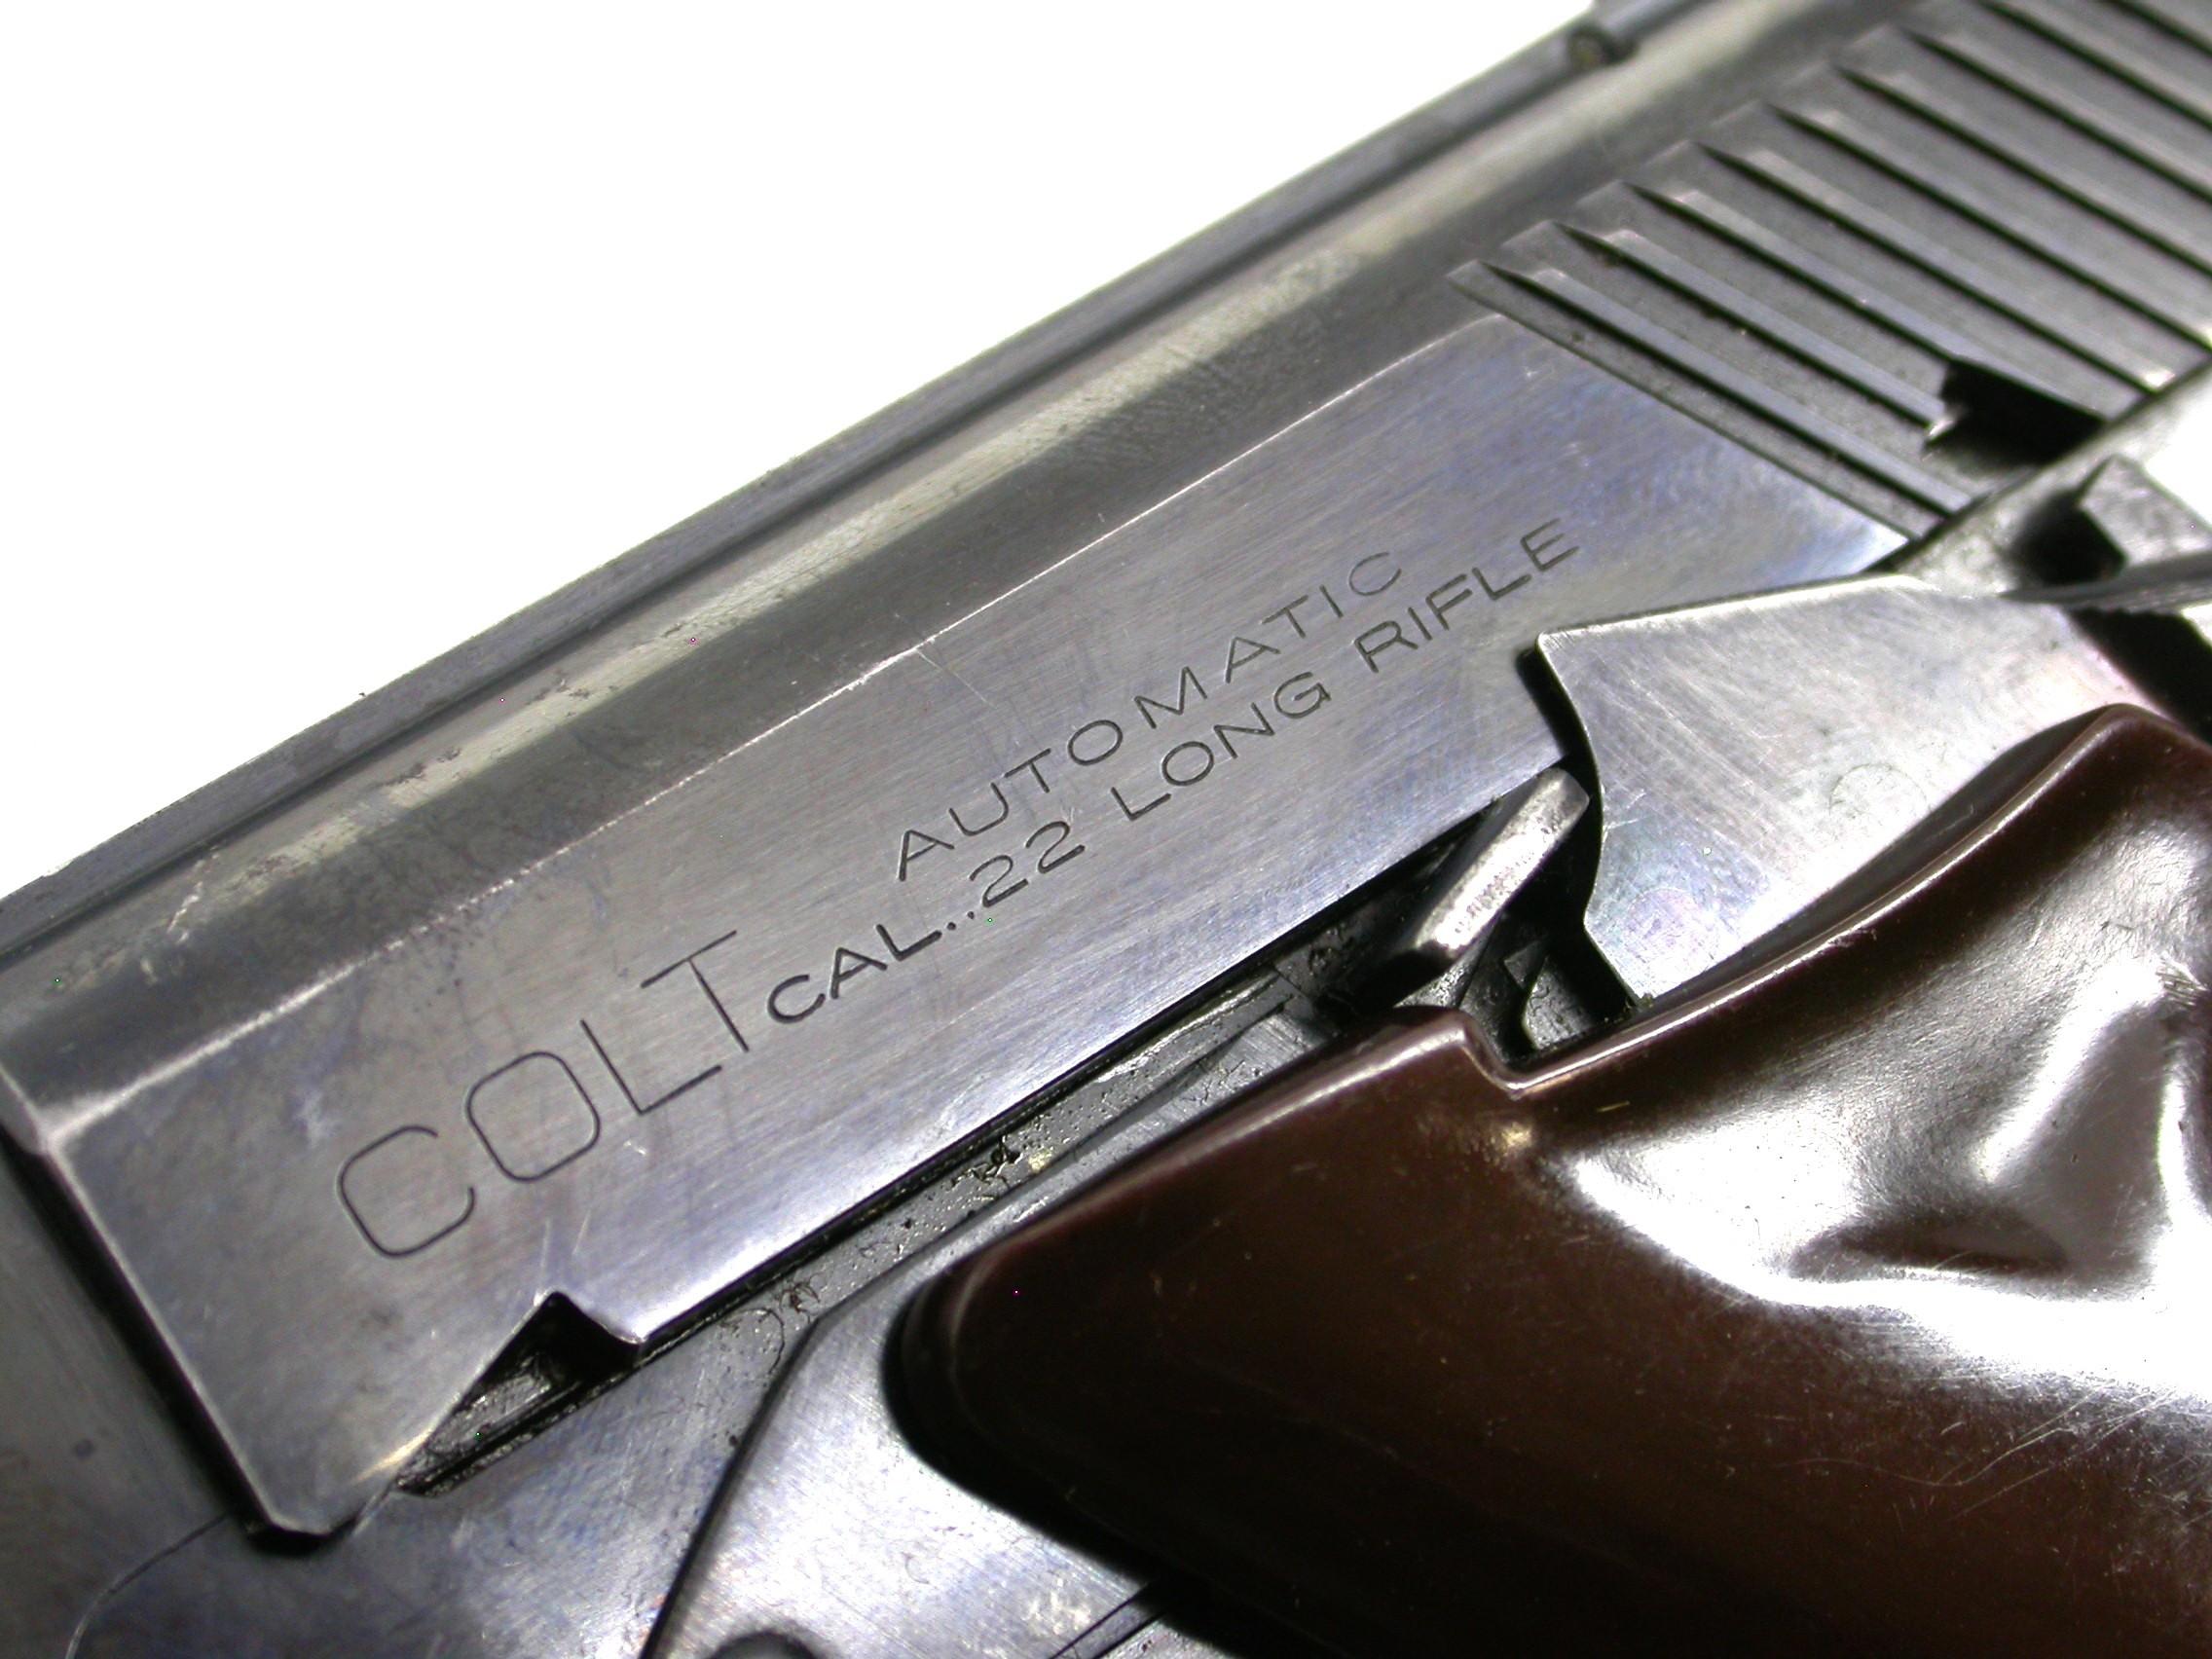 Colt Woodsman .22 LR Semi-Automatic Pistol - FFL #167264-S (CYM)